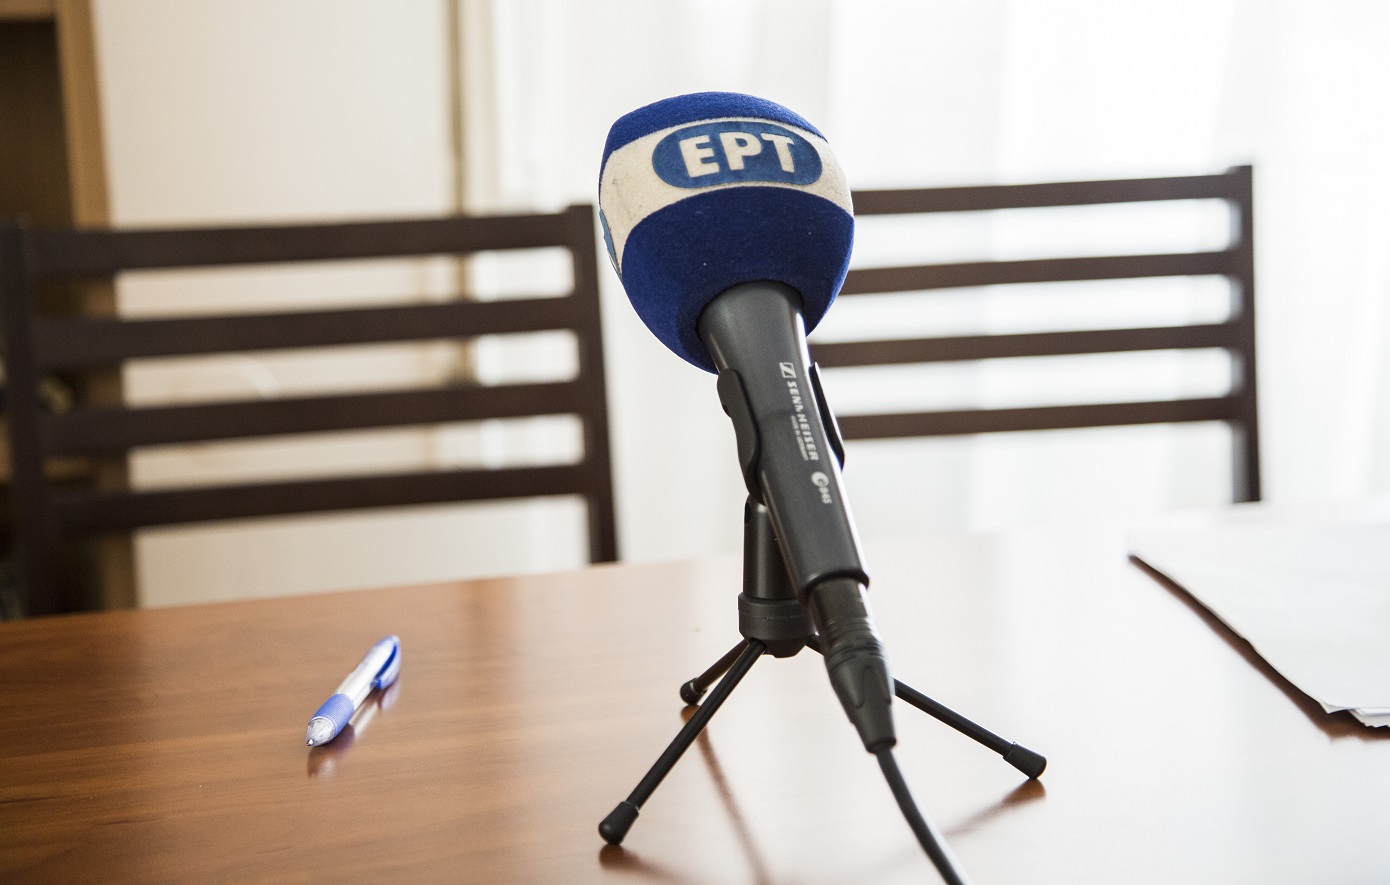 Ποινή φυλάκισης 12 μηνών στον δημοσιογράφο της ΕΡΤ που ξυλοκόπησε τη σύντροφό του &#8211; Μετατρέψιμη προς 10 ευρώ ημερησίως